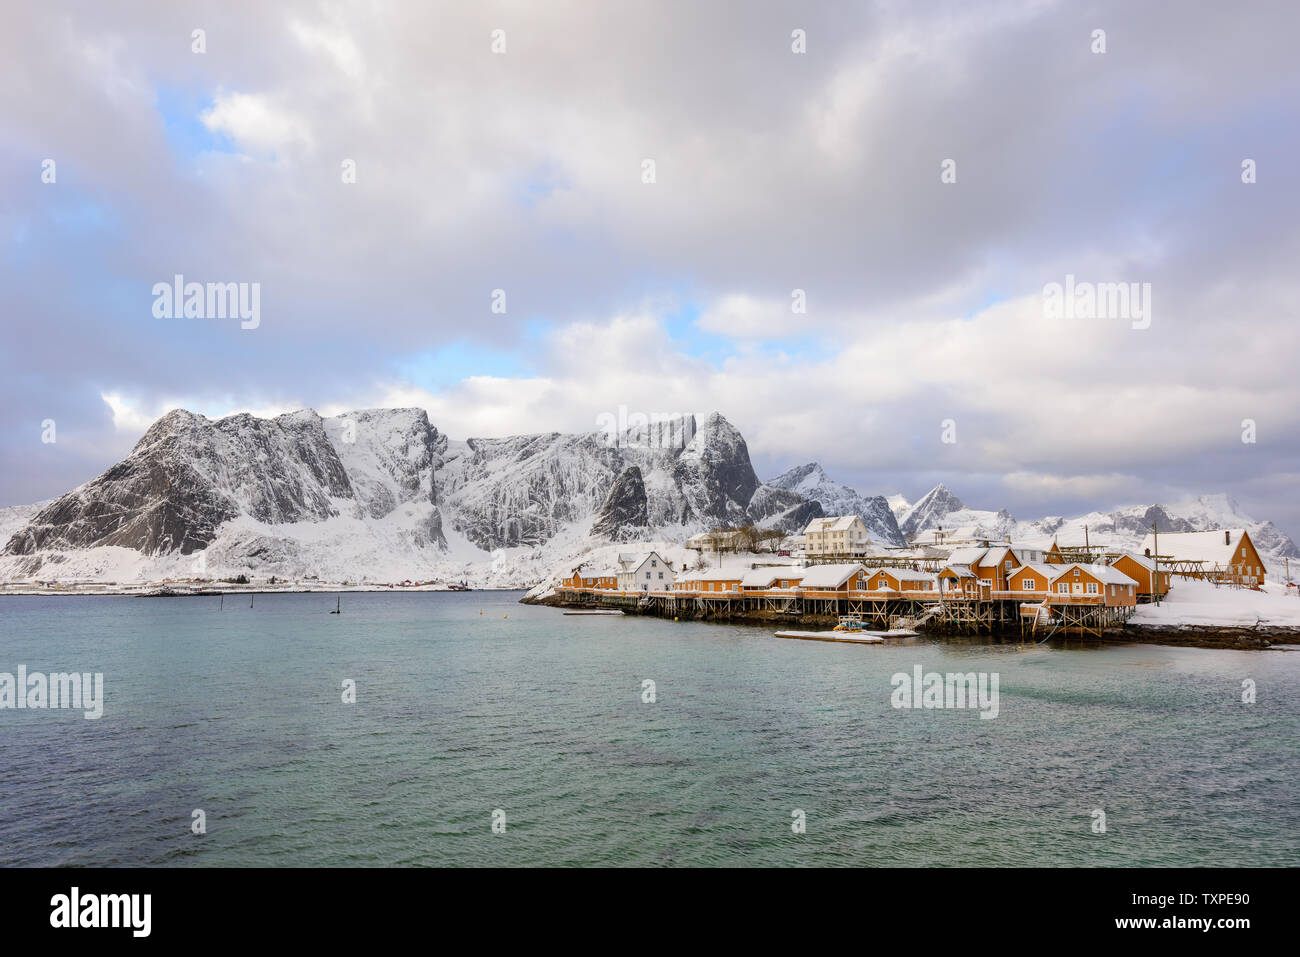 Paysage norvégien typique. Belle vue panoramique des îles Lofoten avec paysage d'hiver traditionnel jaune pêcheur dans le quartier historique de cabines Rorbuer Banque D'Images